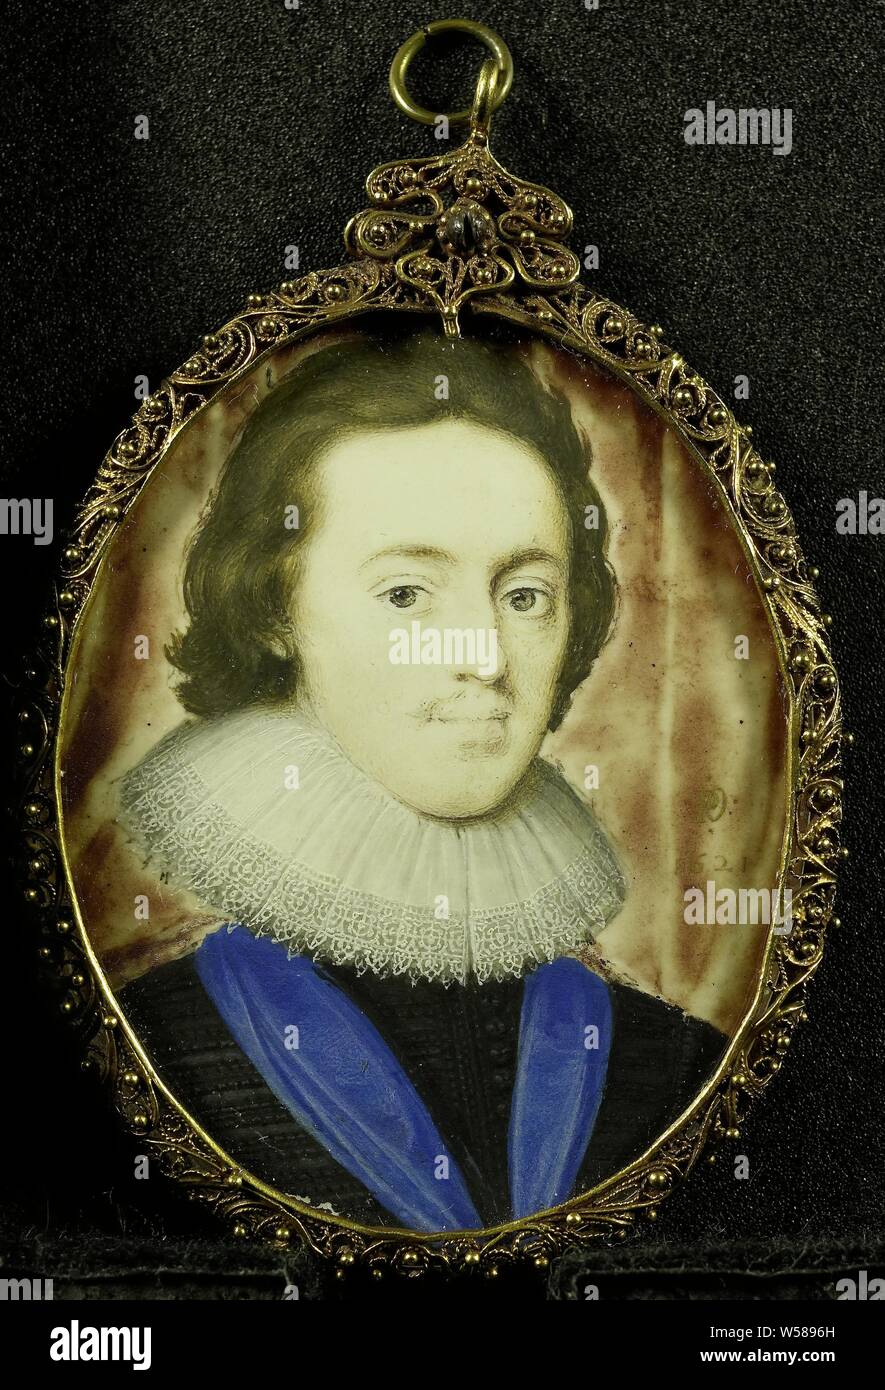 Karel Stuart (1600-49), Prince de Galles. Plus tard le roi Charles I d'Angleterre, Portrait de Karel Stuart (1600-49), Prince de Galles. Plus tard le roi Charles I d'Angleterre. Buste, à droite. Une partie de la collection de miniatures, Charles I (Roi d'Angleterre), Peter Oliver, 1621, parchemin (animale), de l'or (métal), verre, H 5,5 cm × w 4,4 cm h 7,5 cm × w 4,7 cm × 0,4 cm d Banque D'Images